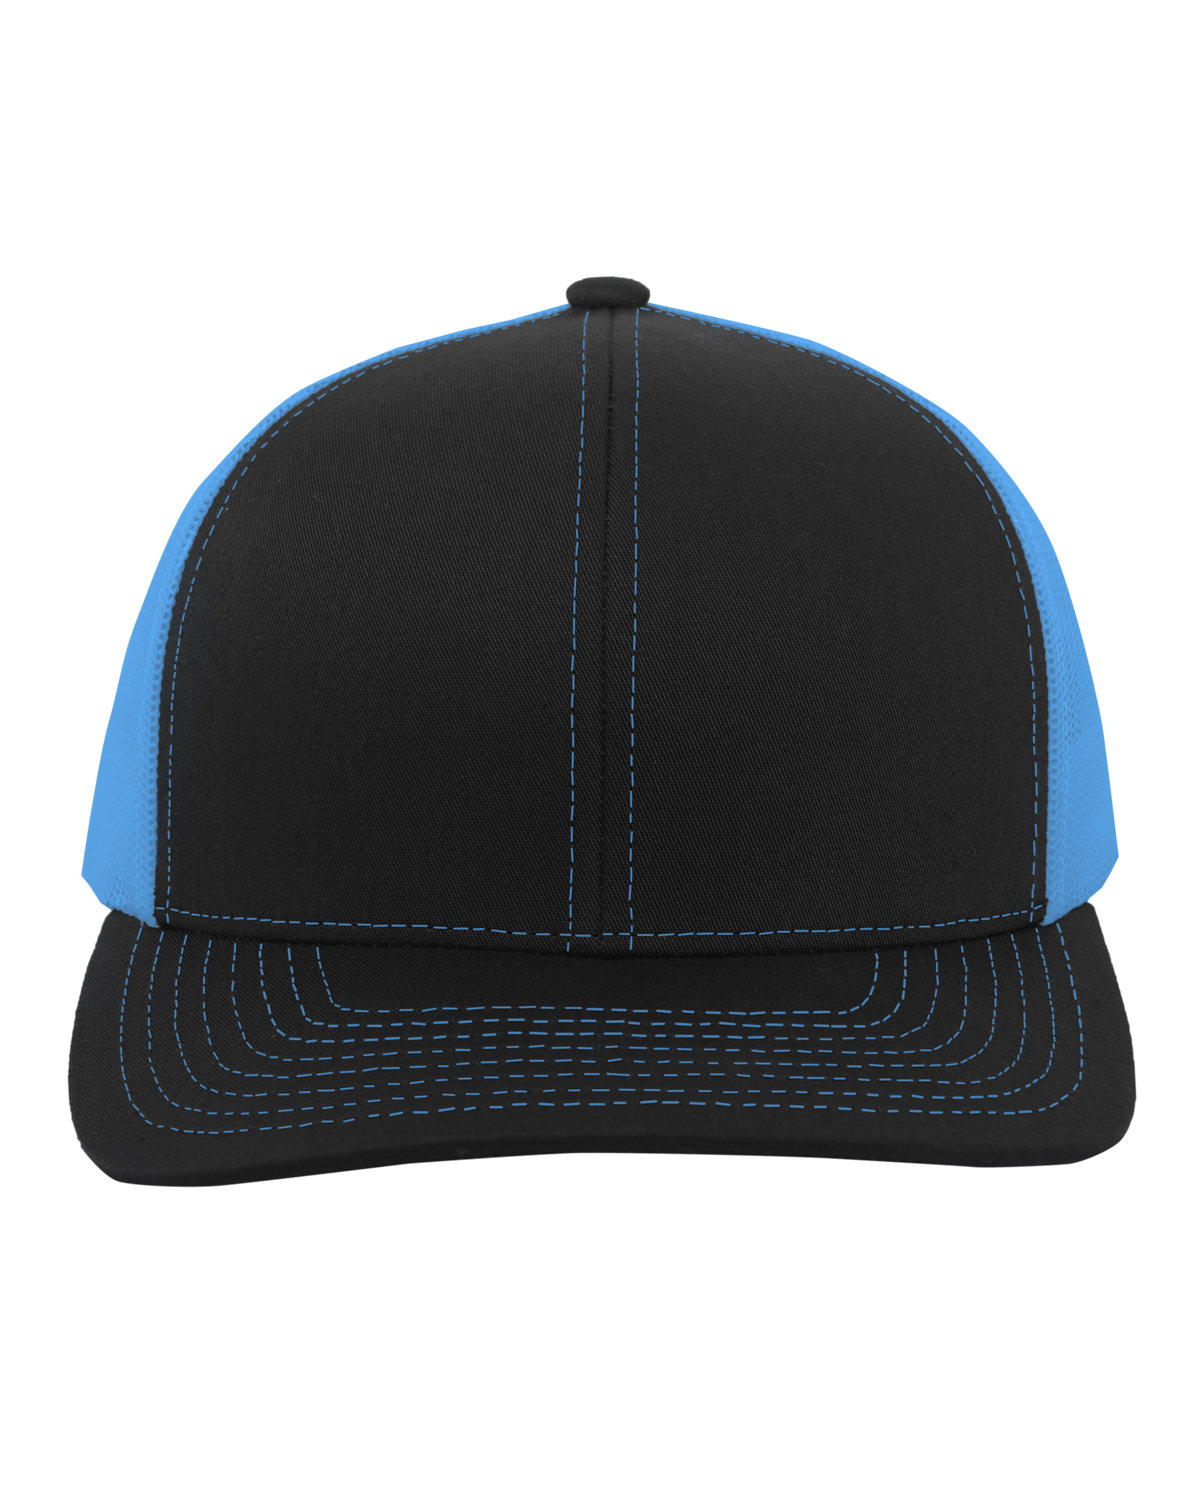 Pacific Headwear Trucker Snapback Hat BLACK/ NEON BLUE 